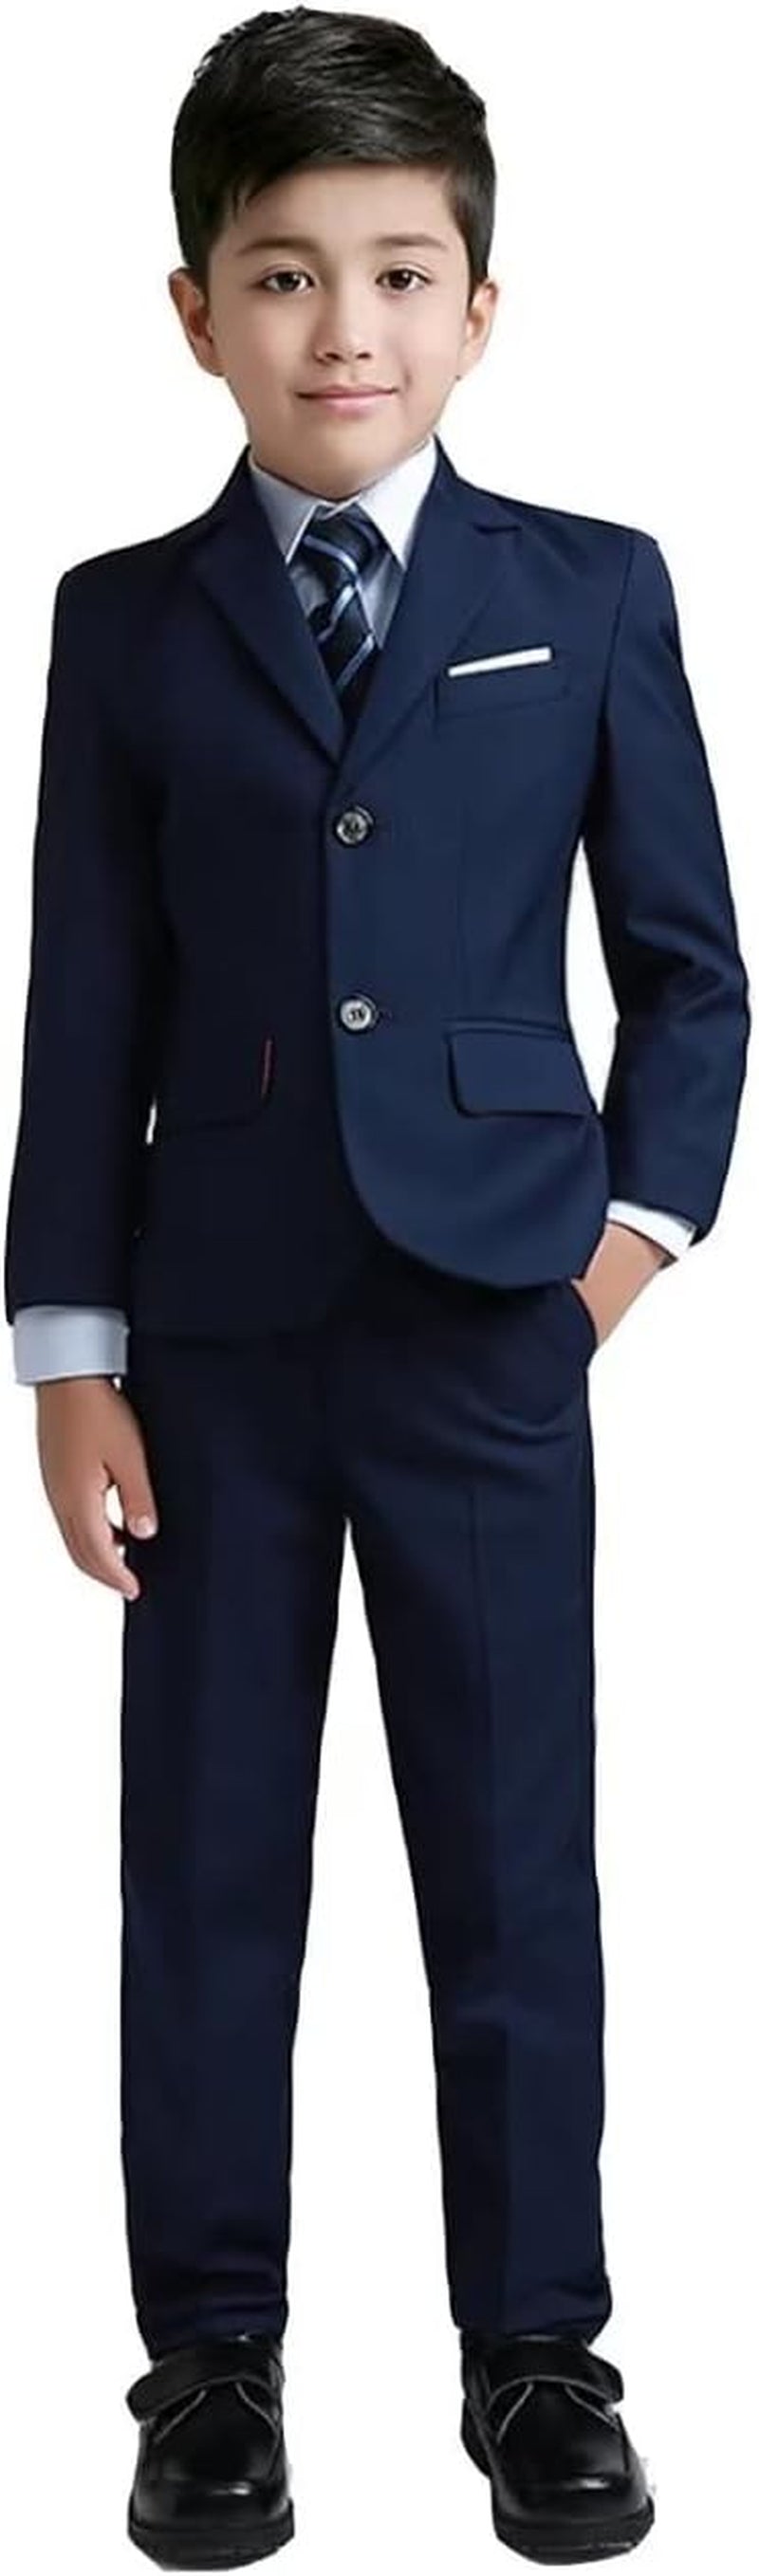 Boys Colorful Formal Suits 5 Piece Slim Fit Dresswear Suit Set